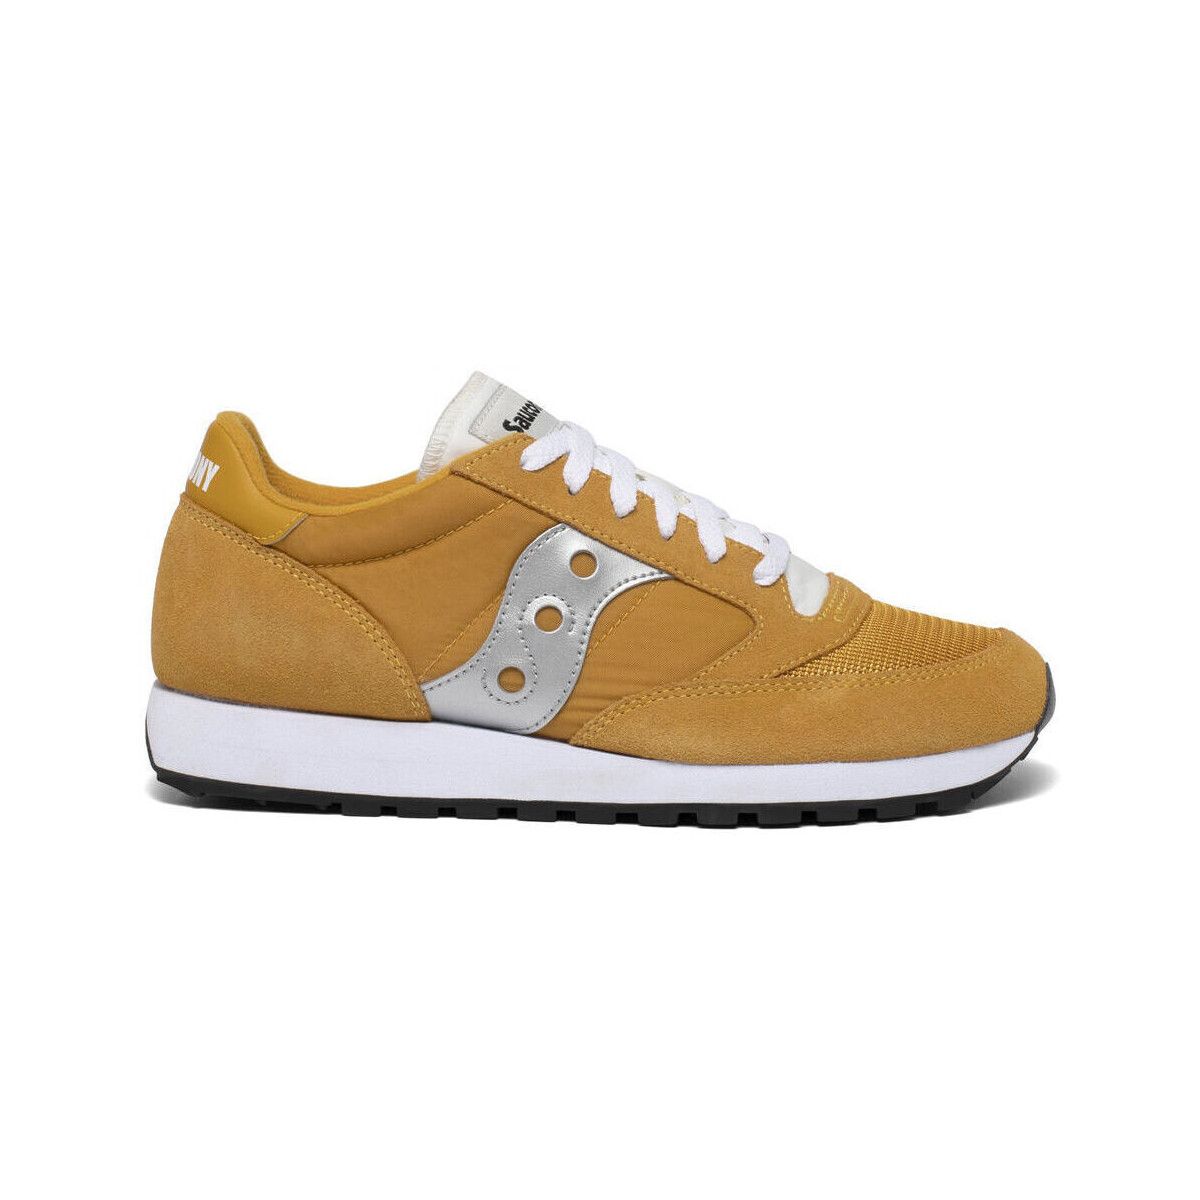 Παπούτσια Άνδρας Sneakers Saucony Jazz original vintage S70368 149 Yellow/White/Silver Yellow